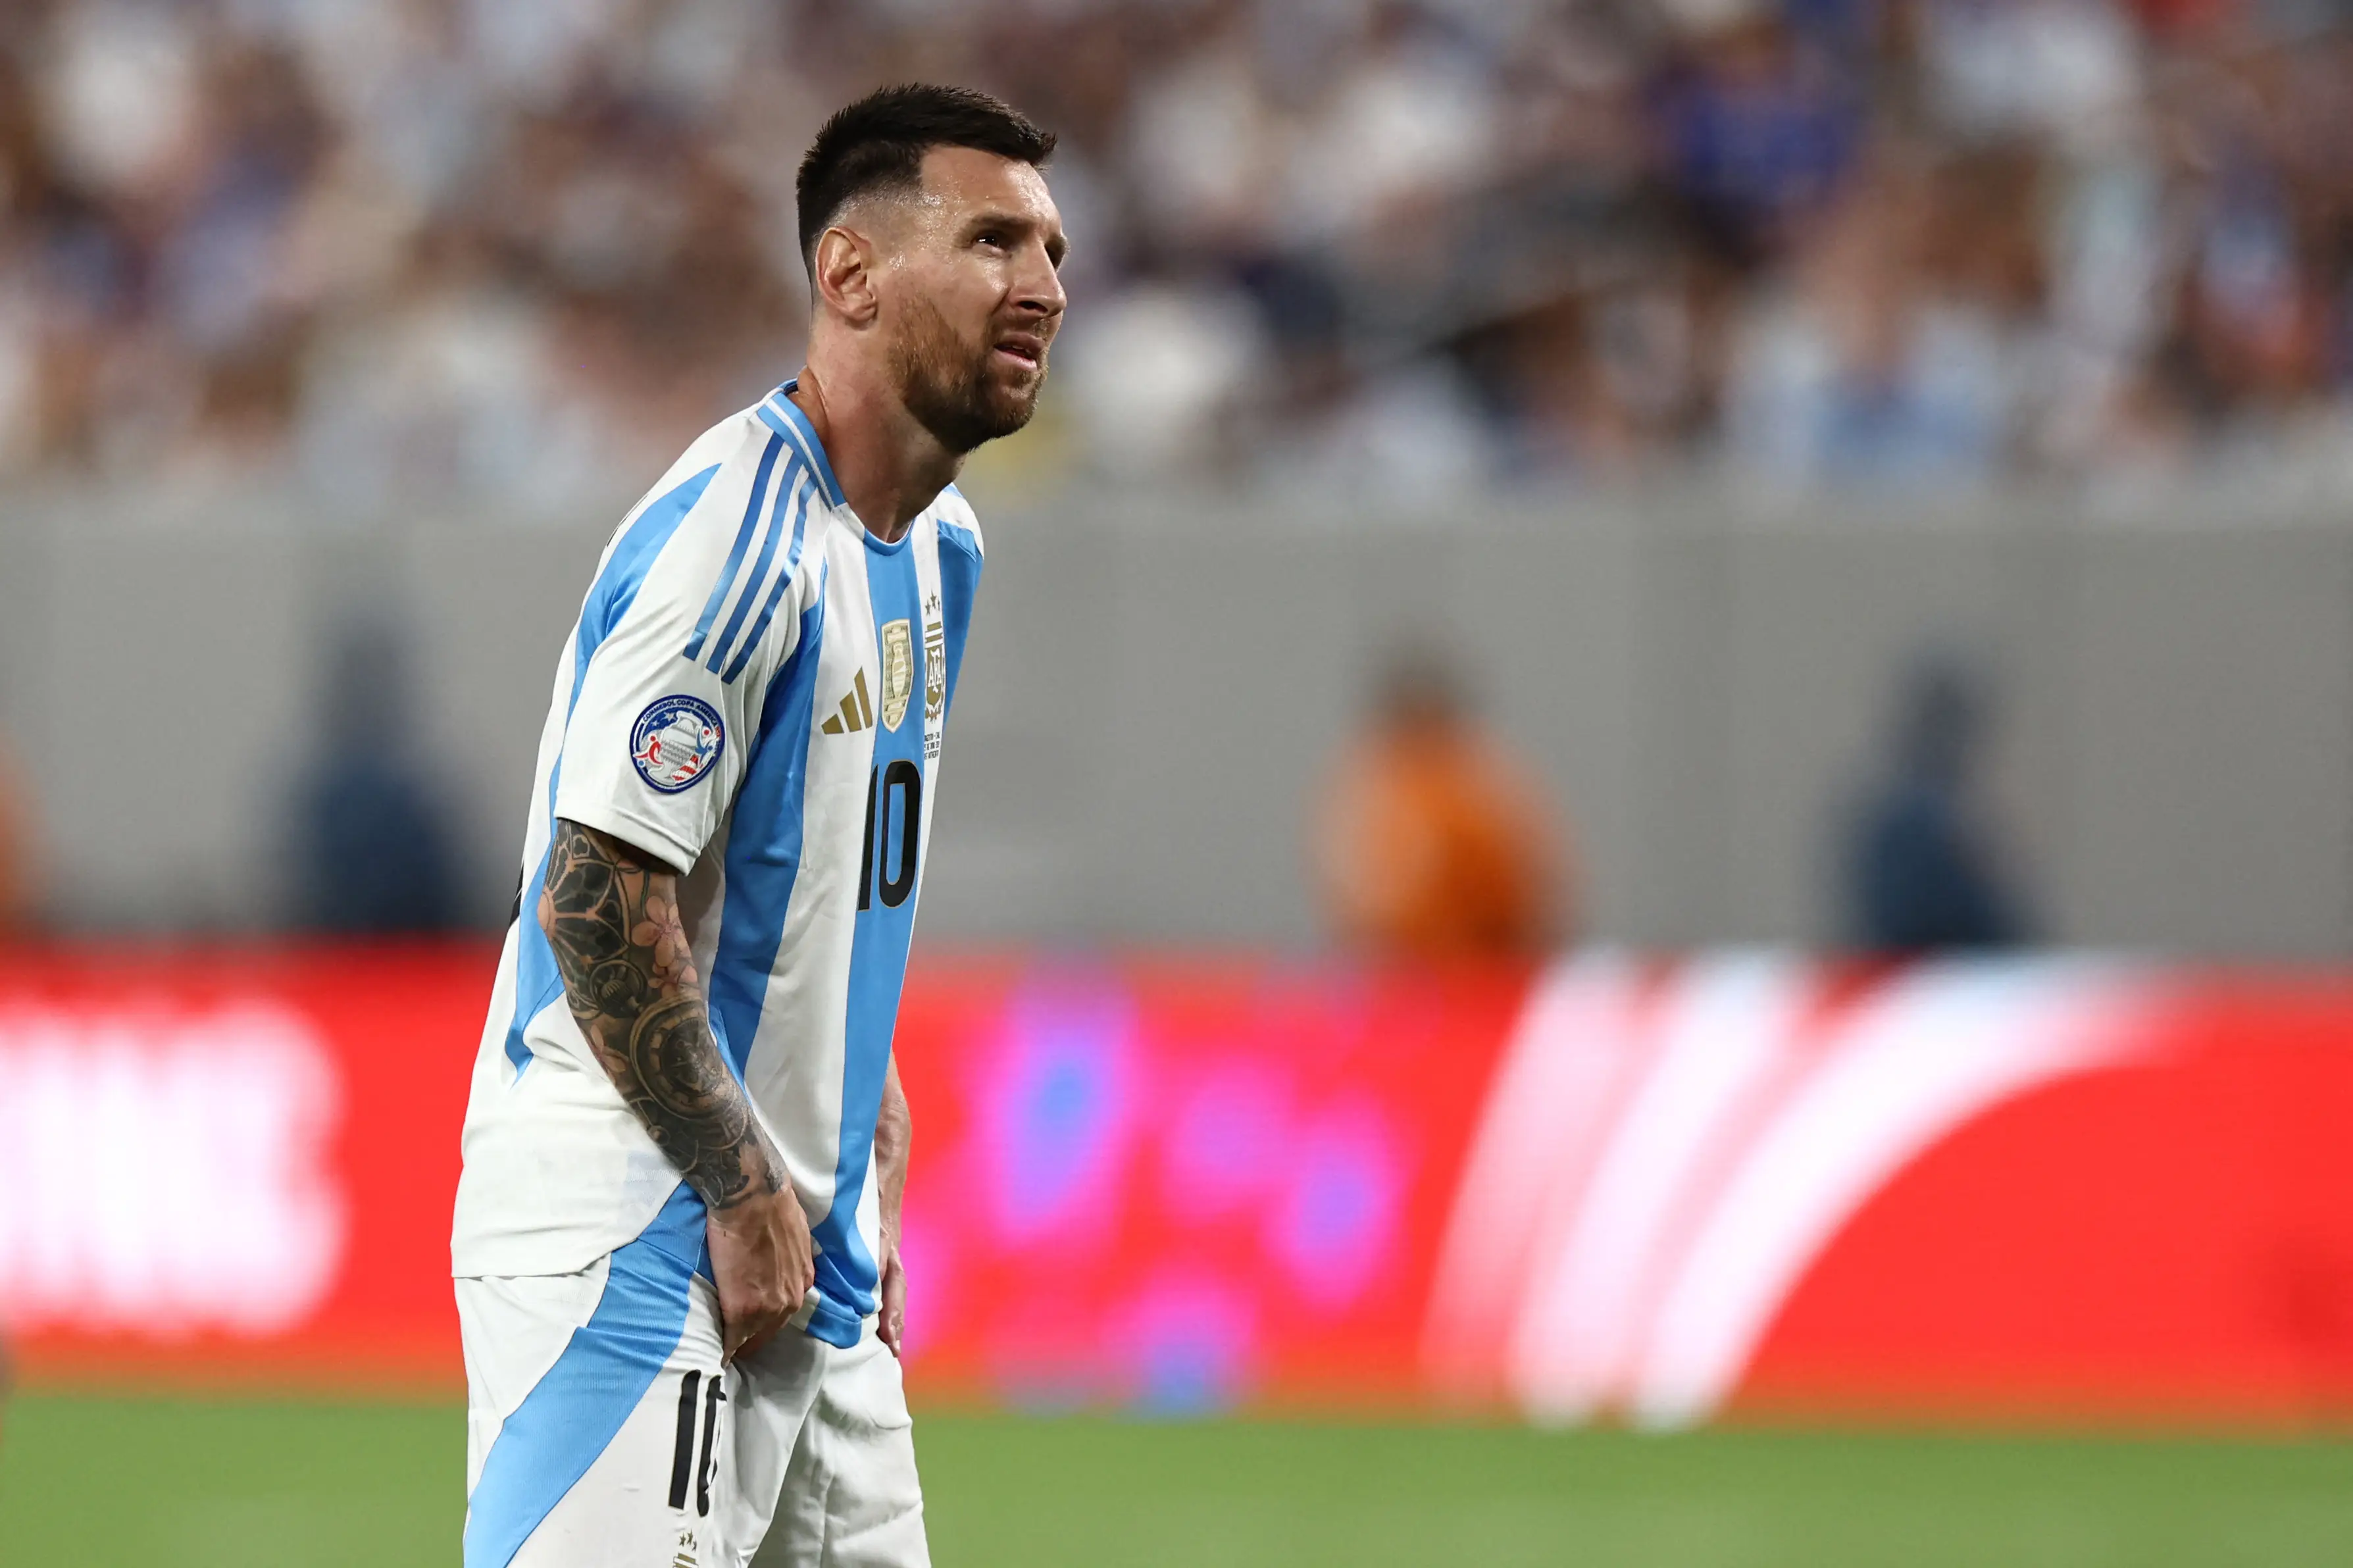 Imagem do atacante Lionel Messi em campo com a camisa da Argentina